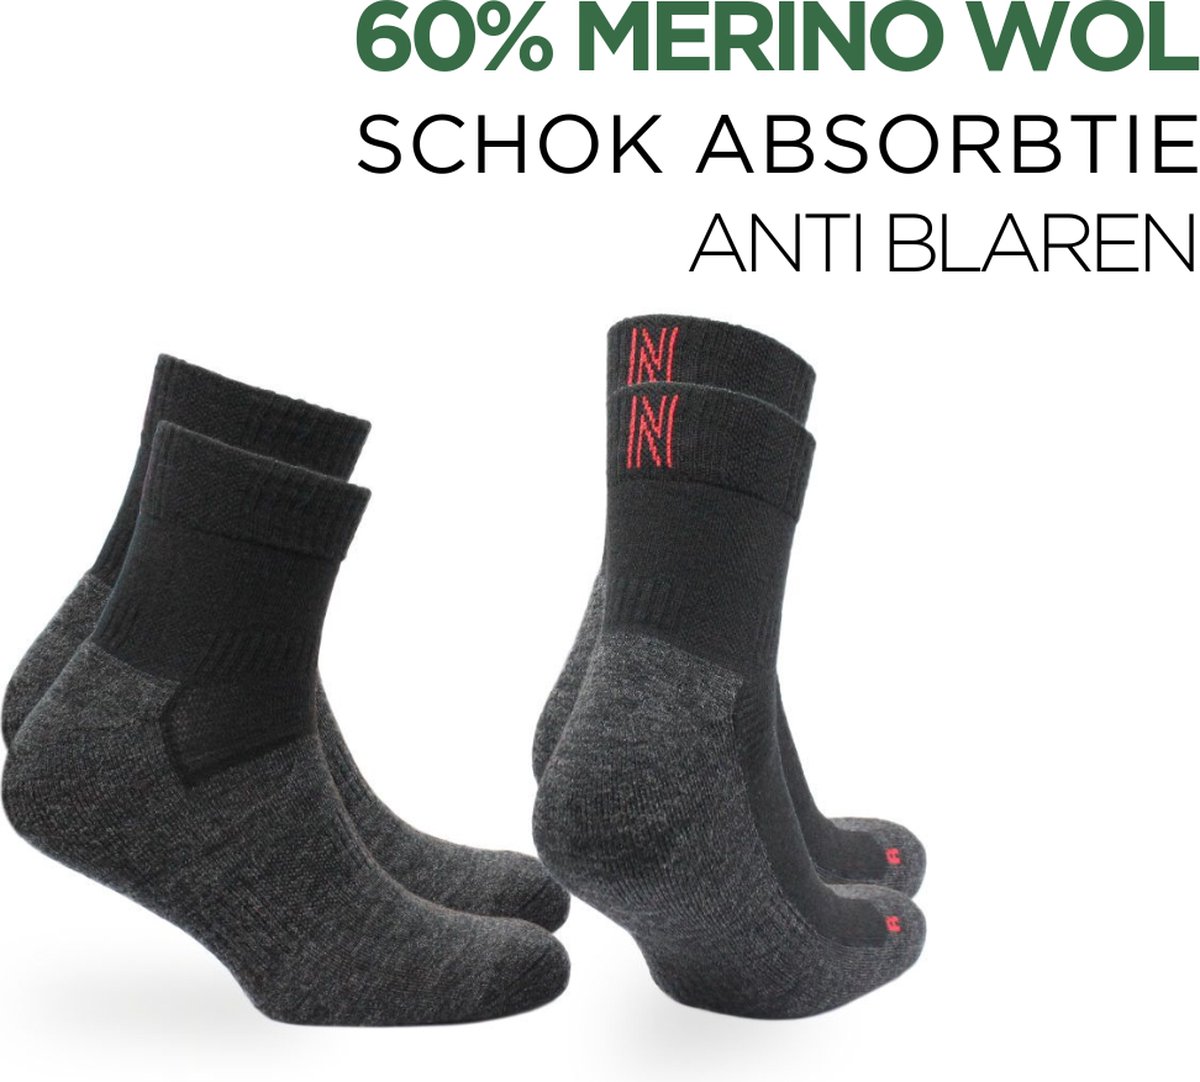 Norfolk - Wandelsokken - 2 paar - Anti Blaren Merino wol sokken met demping - Snelle Vochtopname - Wollen Sokken - Leonardo QTR - Zwart - 35-38